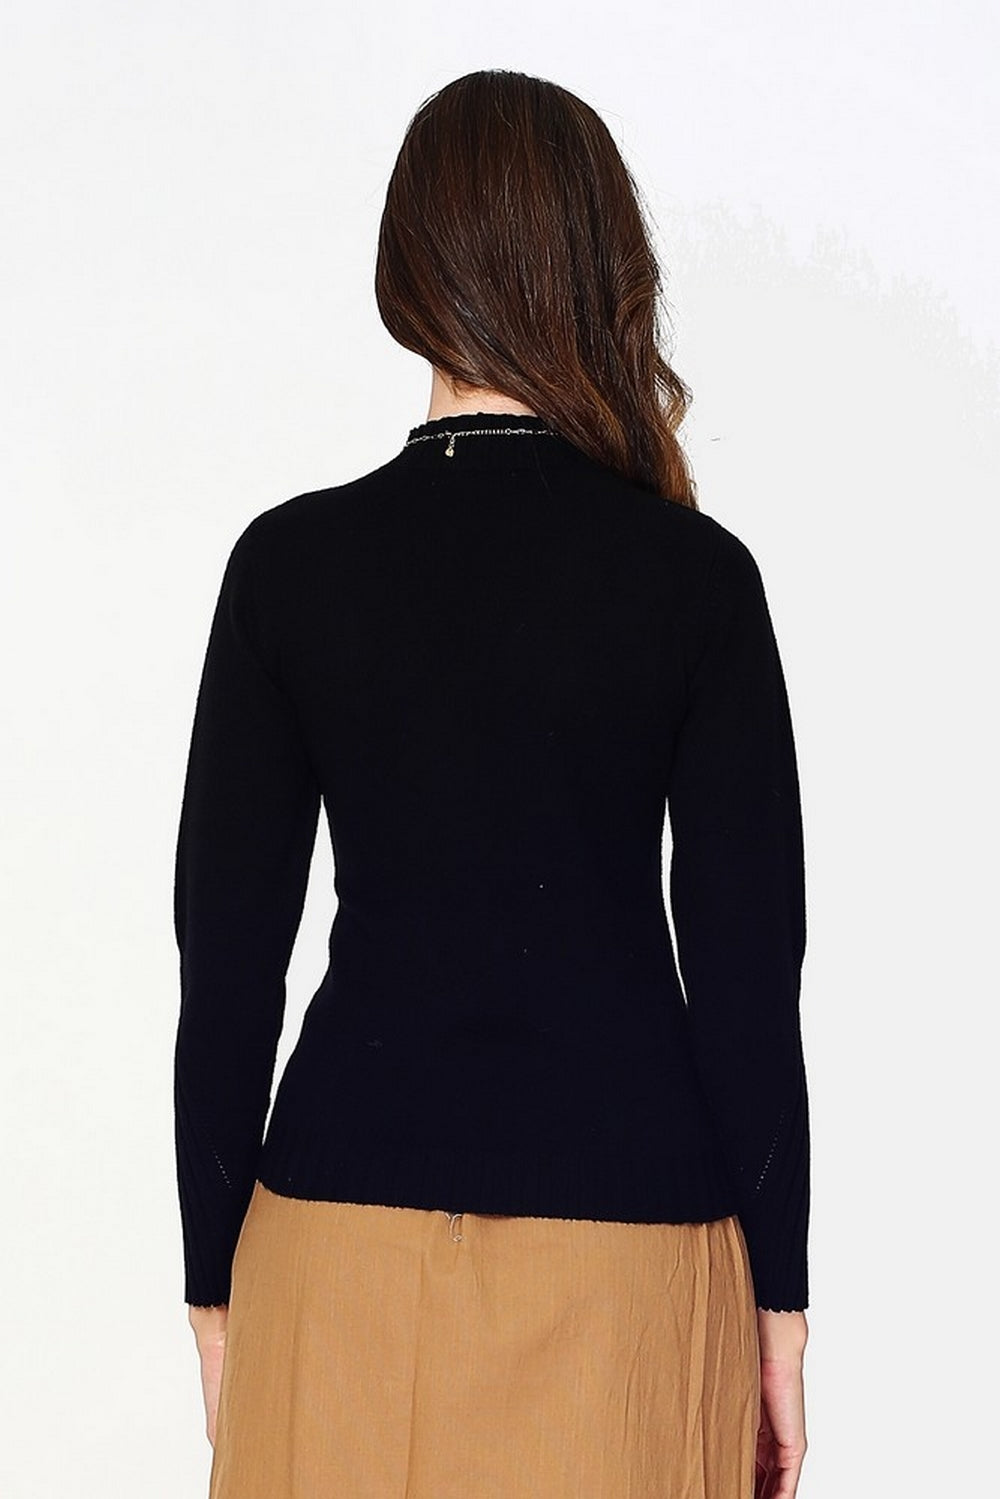 Pullover mit hohem Halsausschnitt, ausgefallenem Strick auf der Vorderseite und langen Ärmeln